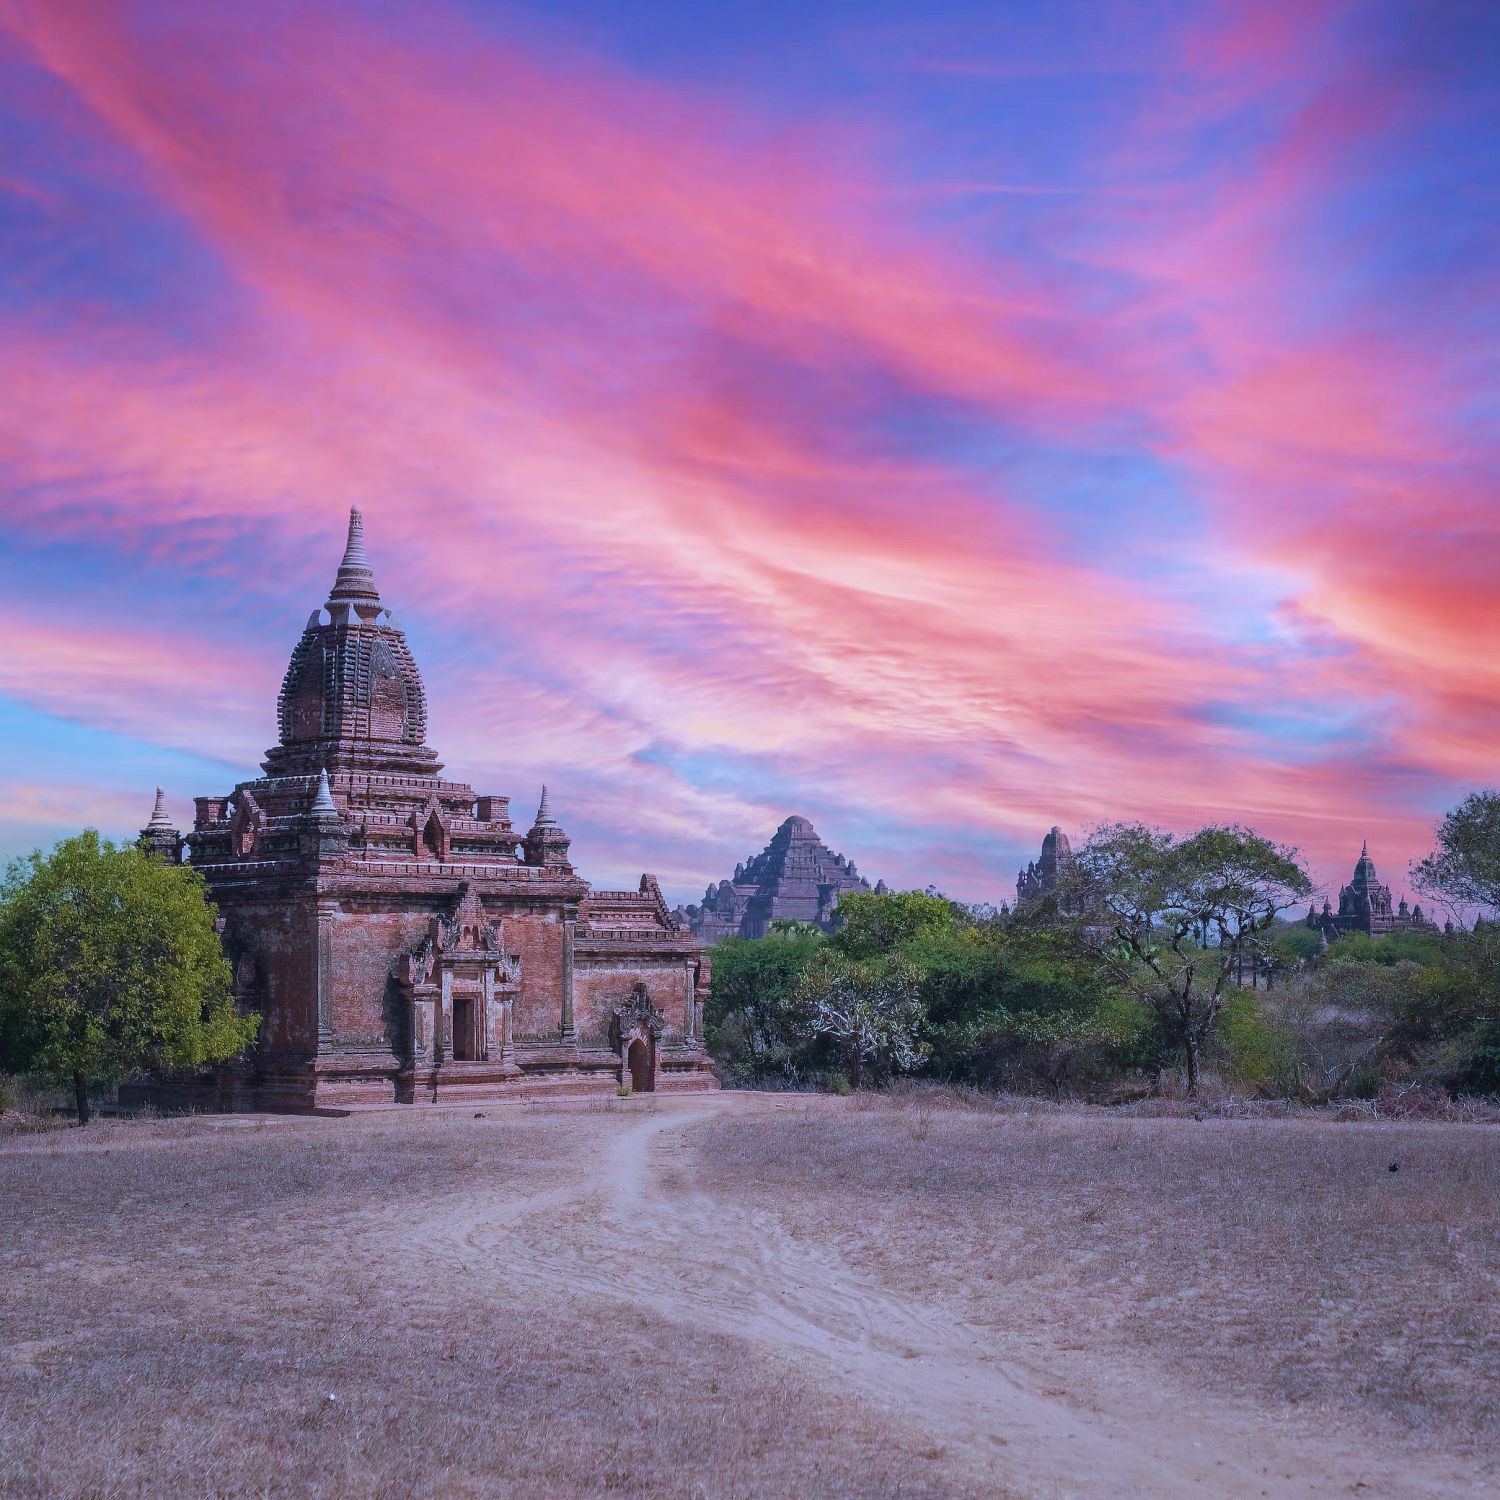 Du lịch Bagan - ngắm mặt trời lặn kì ảo sau hàng nghìn tòa tháp cổ - Ảnh 7.